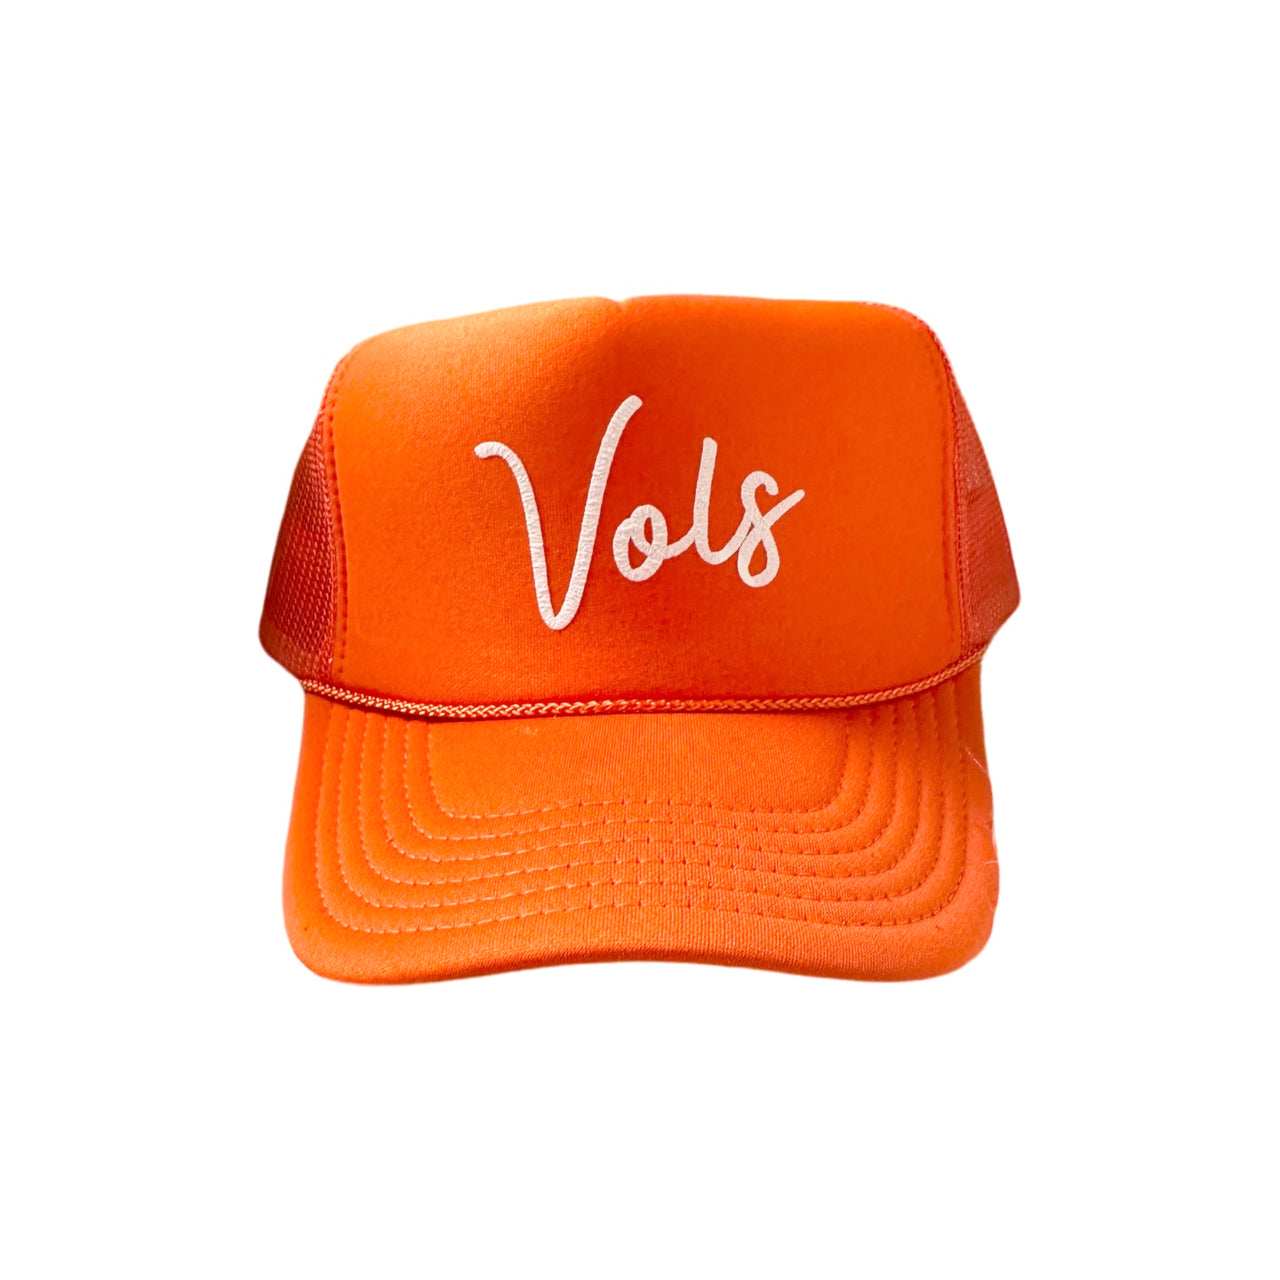 Vols - Orange Puffy Trucker